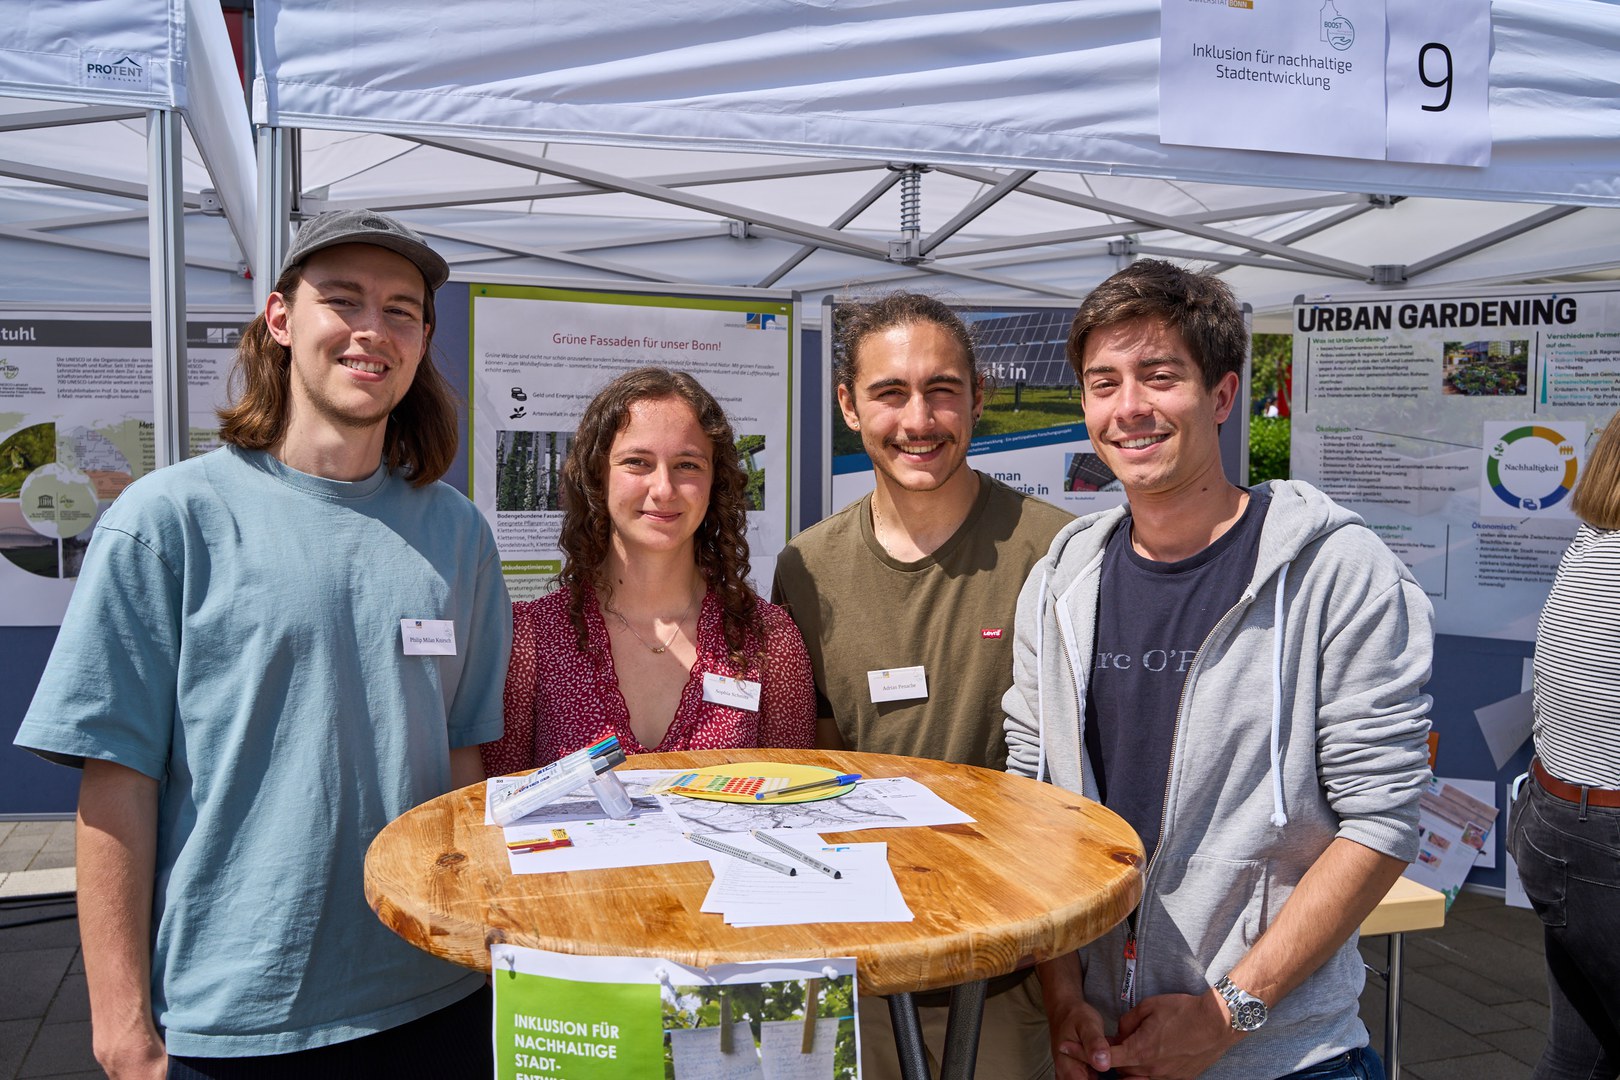 Die Geographie-Studierenden Philip, Sohia, Adiran und Tim (v.l.) - stellten ihr Seminarprojekt "Grüne Fassaden für unser Bonn" vor.